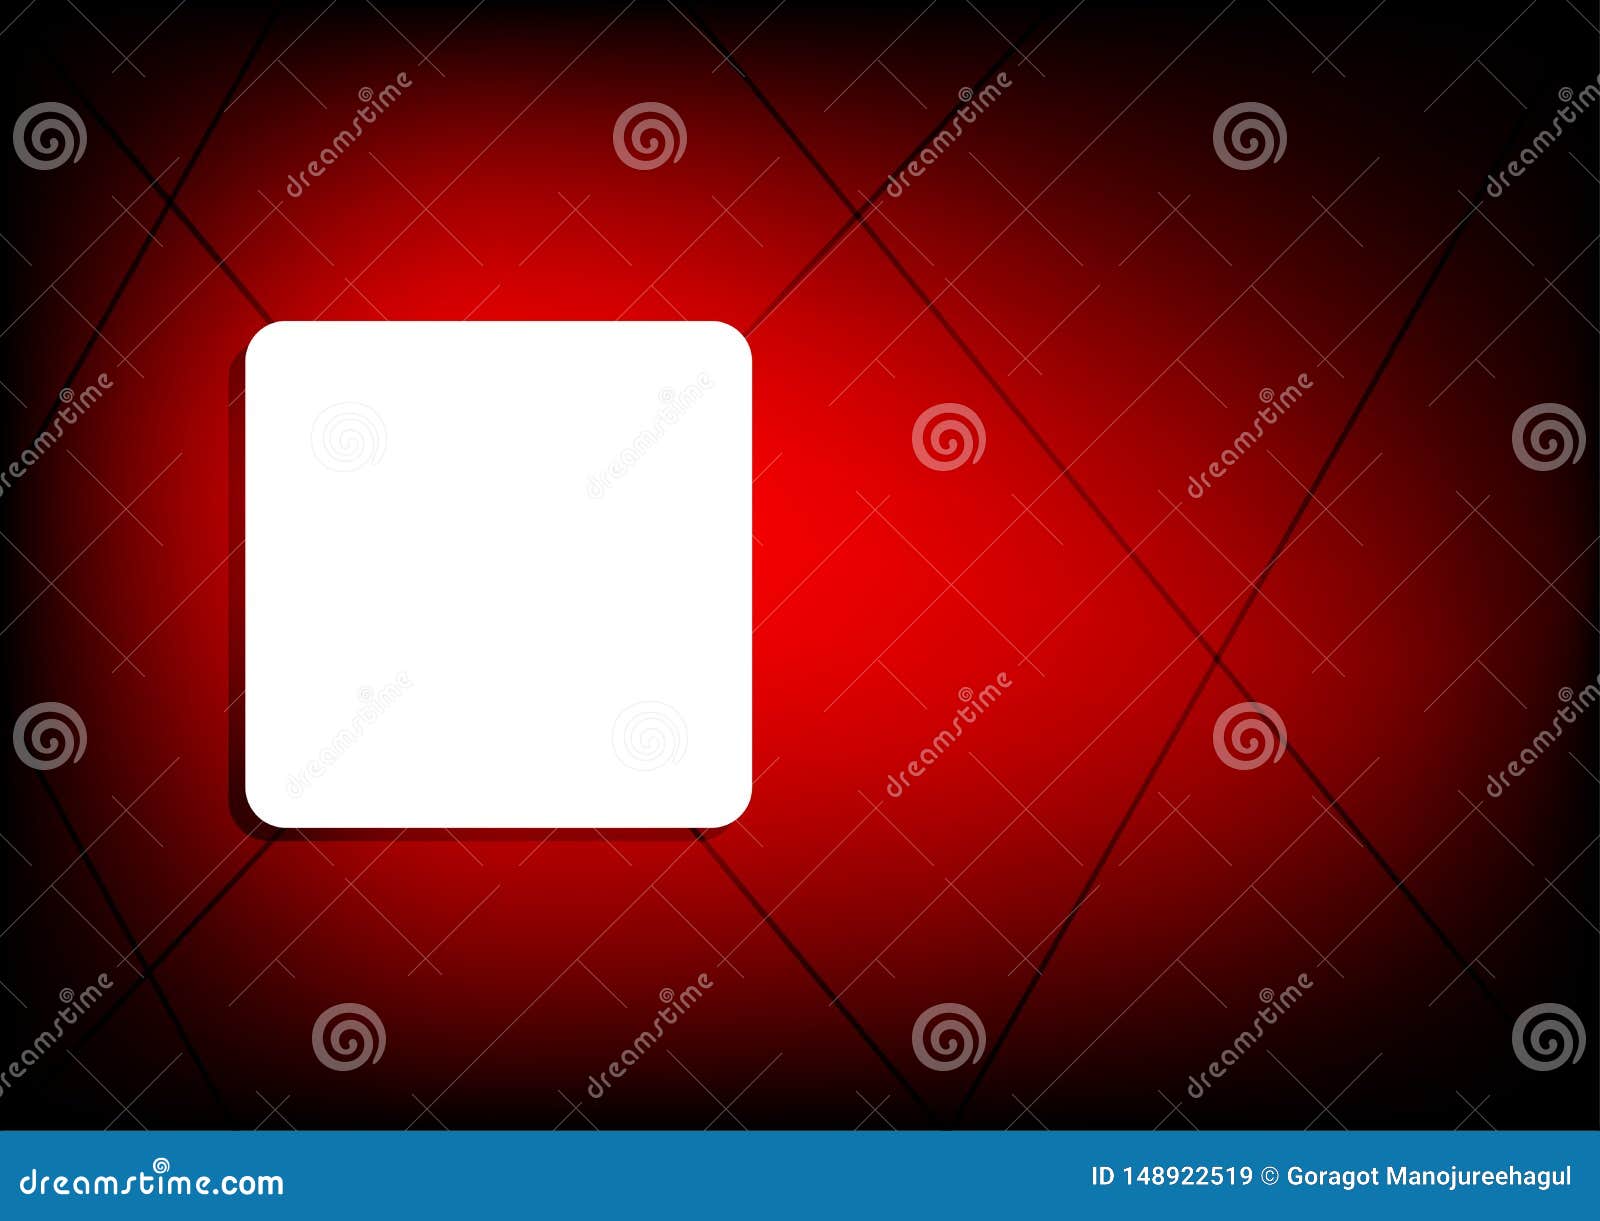 Dark Red Plain Background and White Banner Stock Vector - Illustration of  plain, line: 148922519